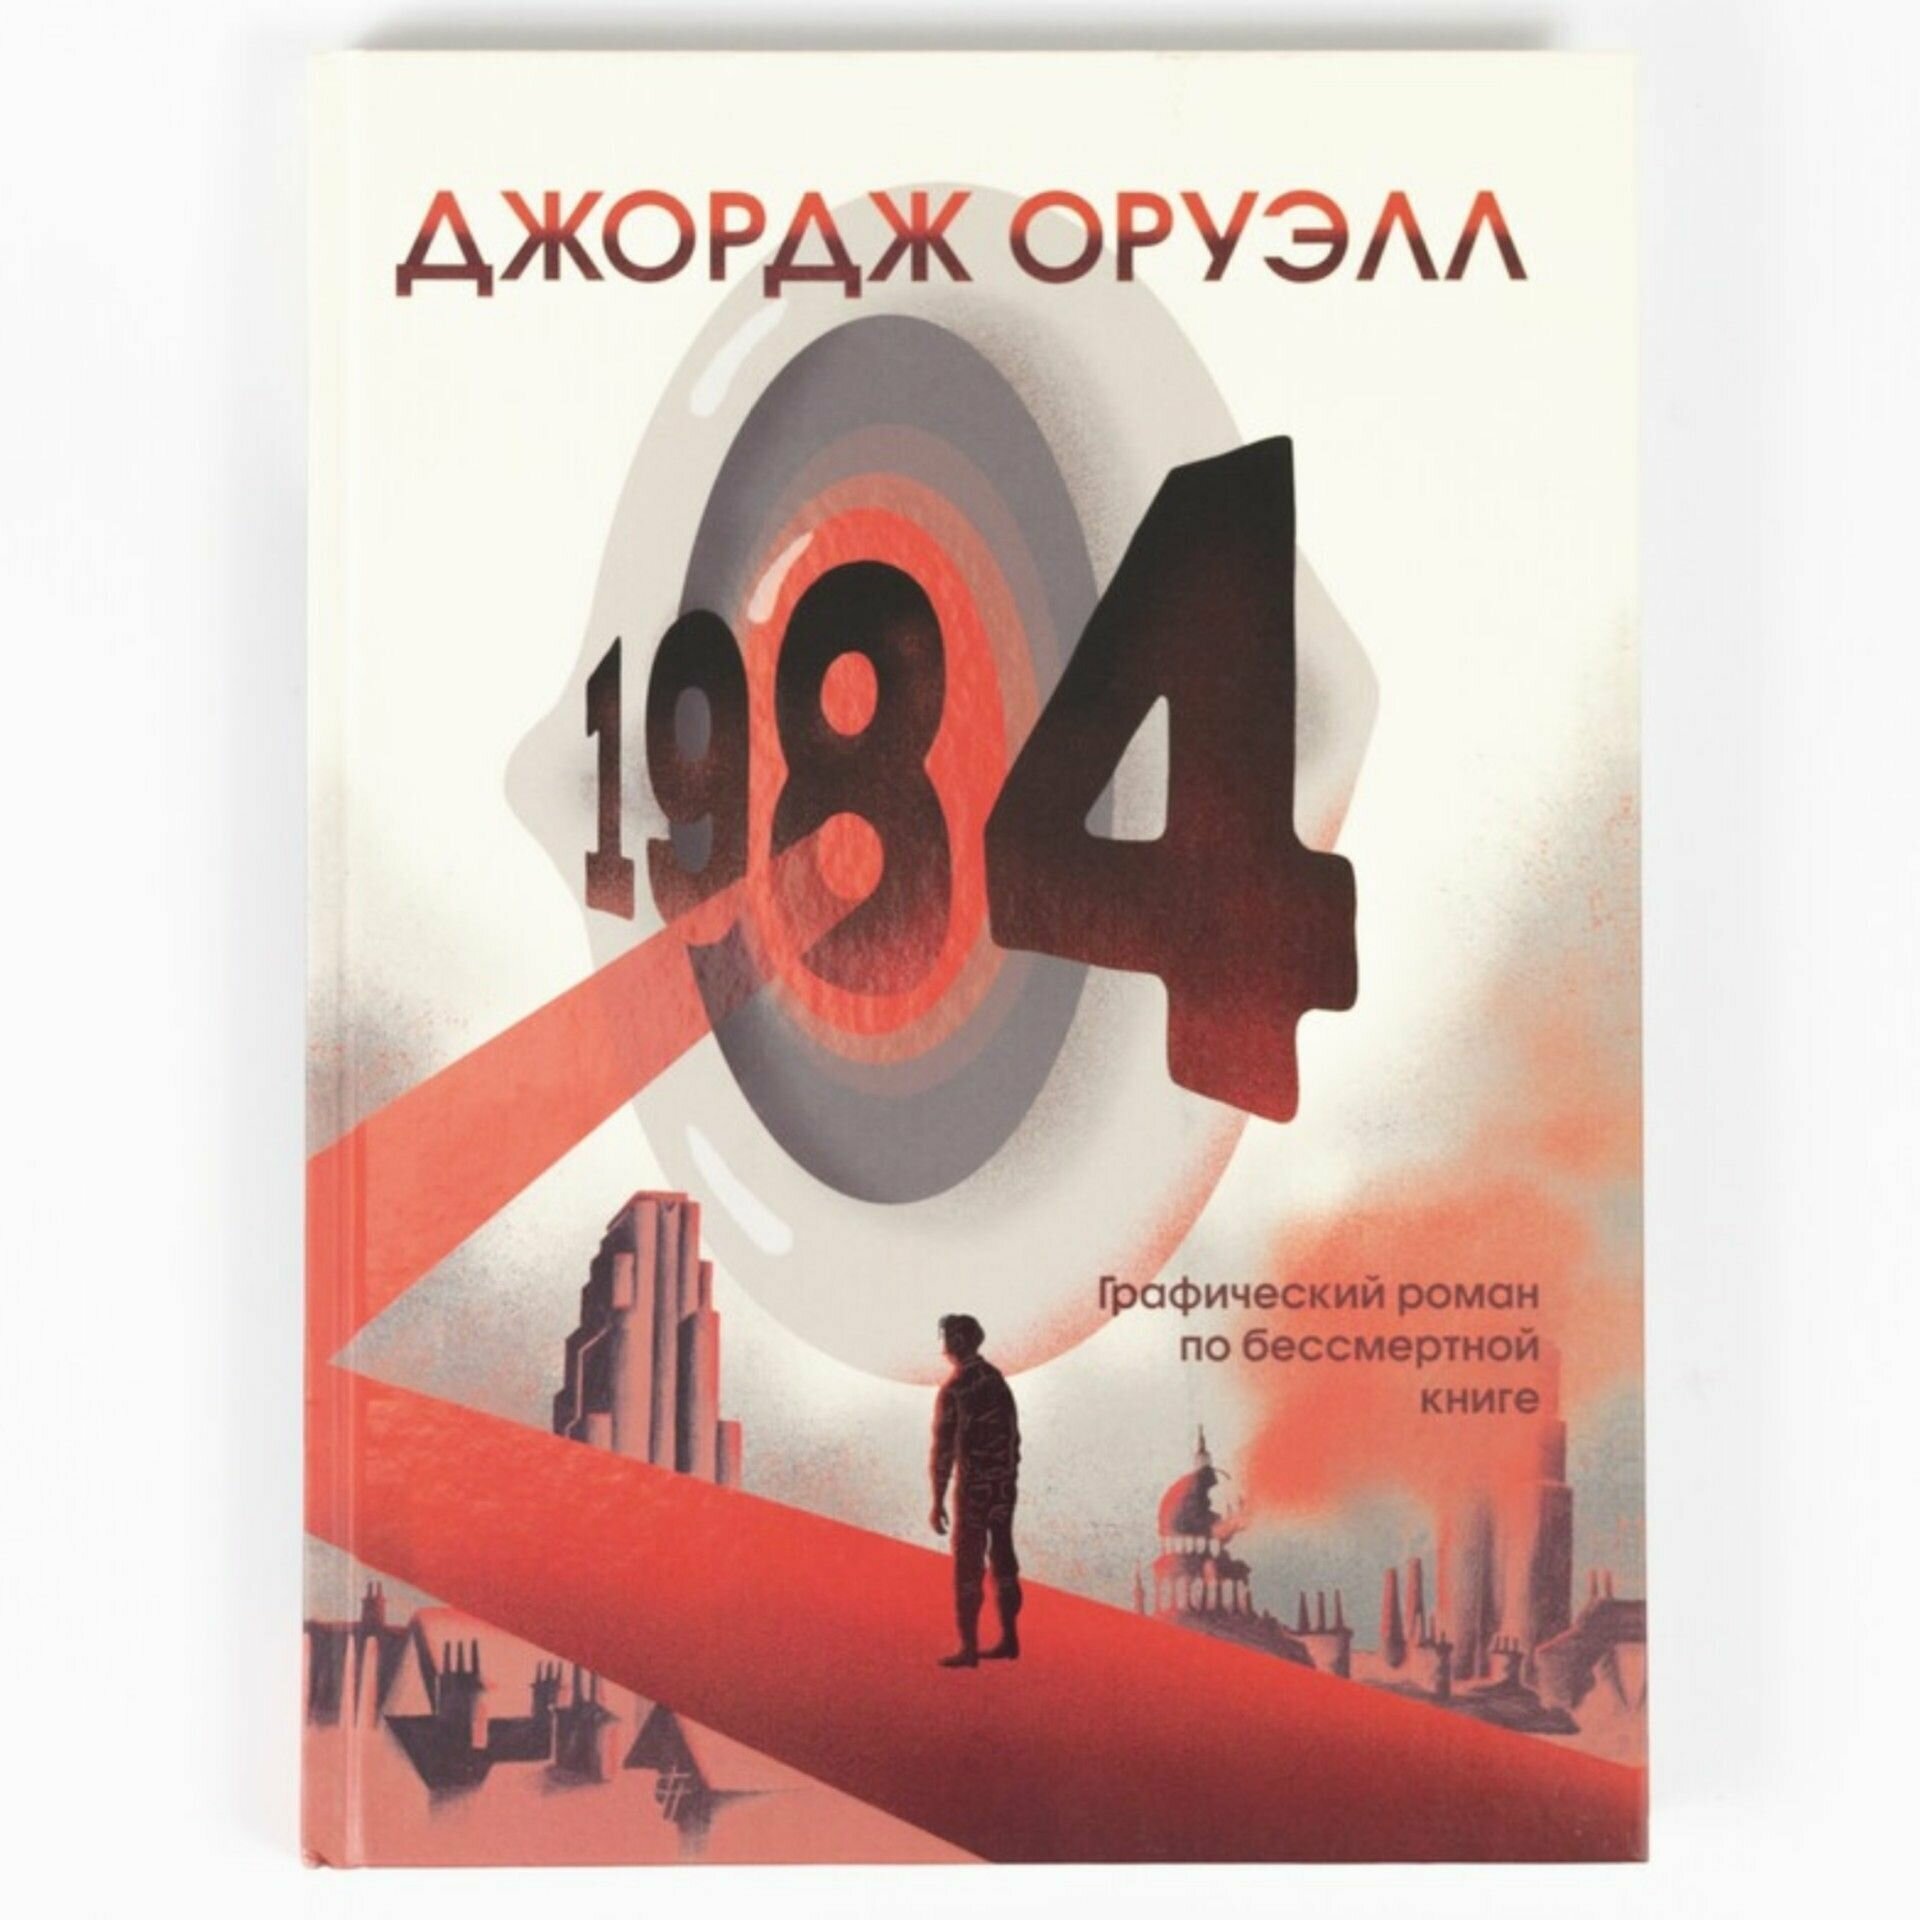 Книга "1984. Графический роман" Графическое воплощение тоталитарного кошмара Джорджа Оруэлла. Более 1500 рисунков художника Фидо Нести